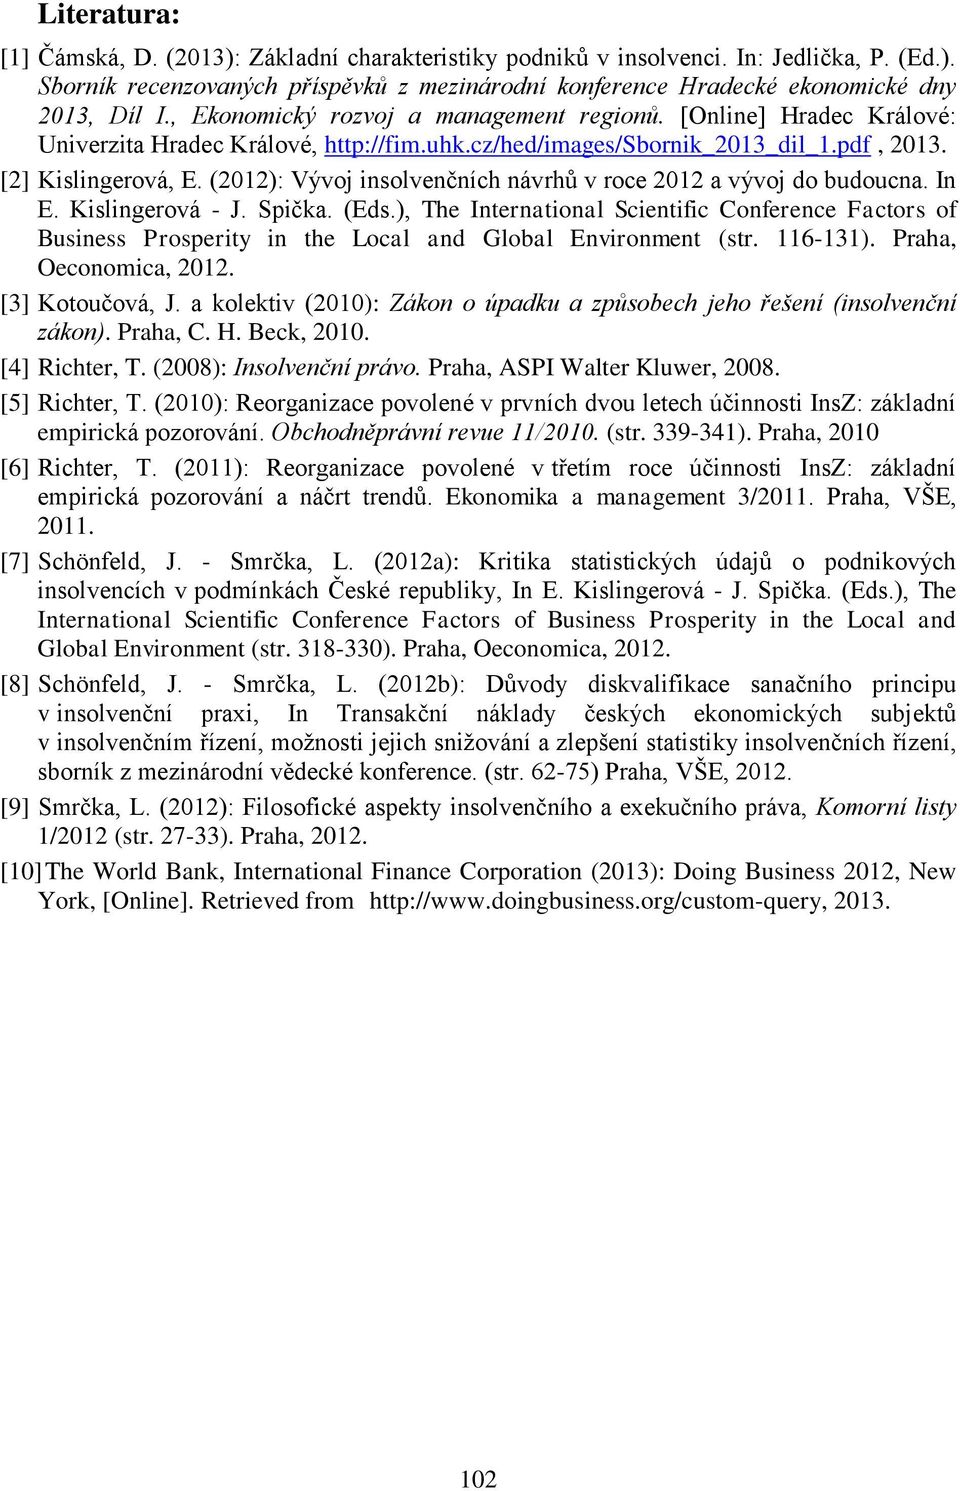 (2012): Vývoj insolvenčních návrhů v roce 2012 a vývoj do budoucna. In E. Kislingerová - J. Spička. (Eds.